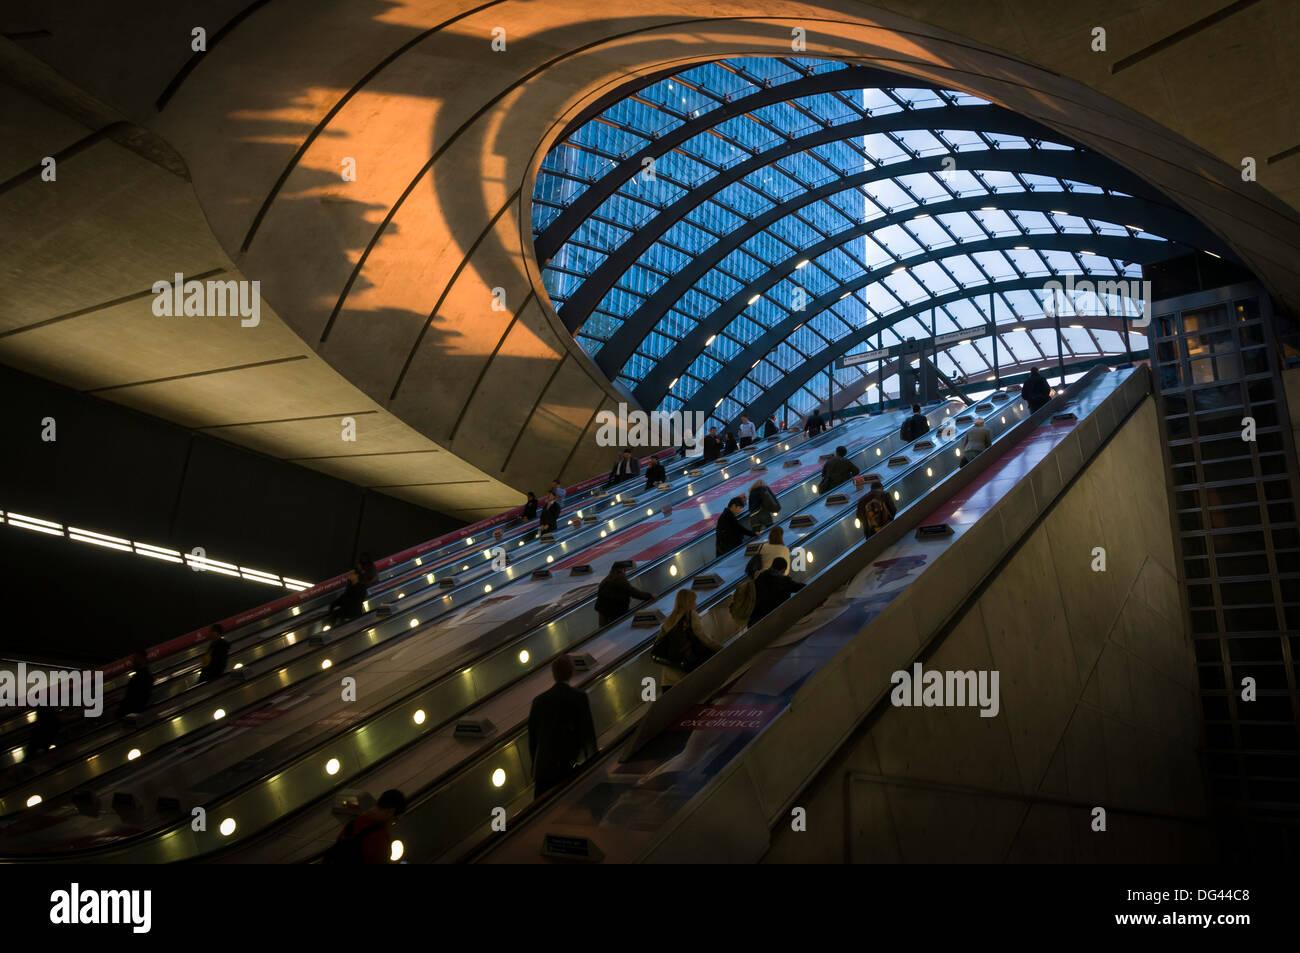 Les voyageurs à la station de métro Canary Wharf pris au coucher du soleil, Docklands, Londres, Angleterre, Royaume-Uni, Europe Banque D'Images